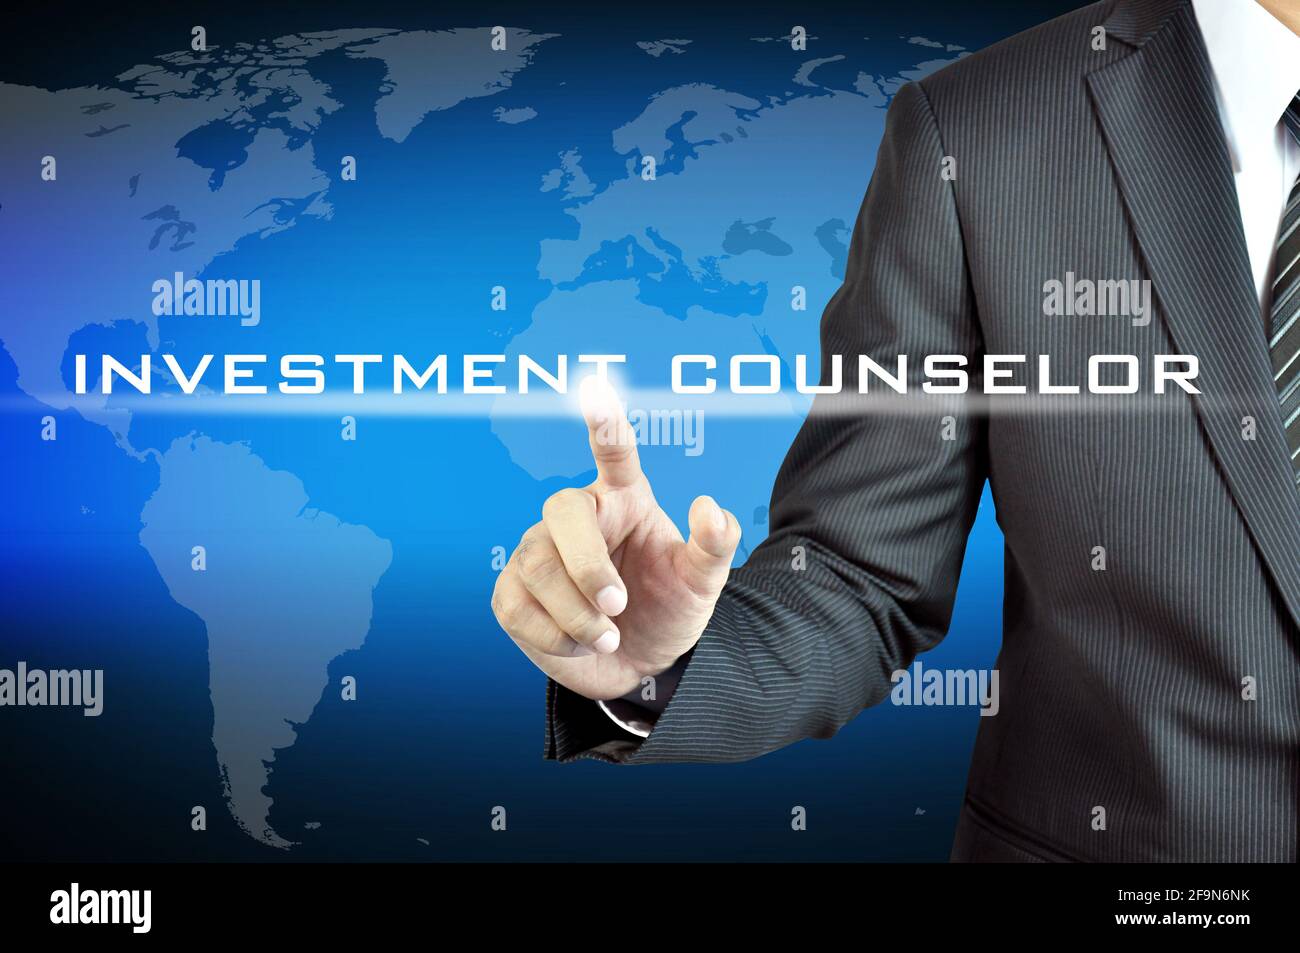 Palabras del CONSEJERO de INVERSIÓN que tocan la mano en la pantalla virtual - inversión y concepto de planificación financiera Foto de stock